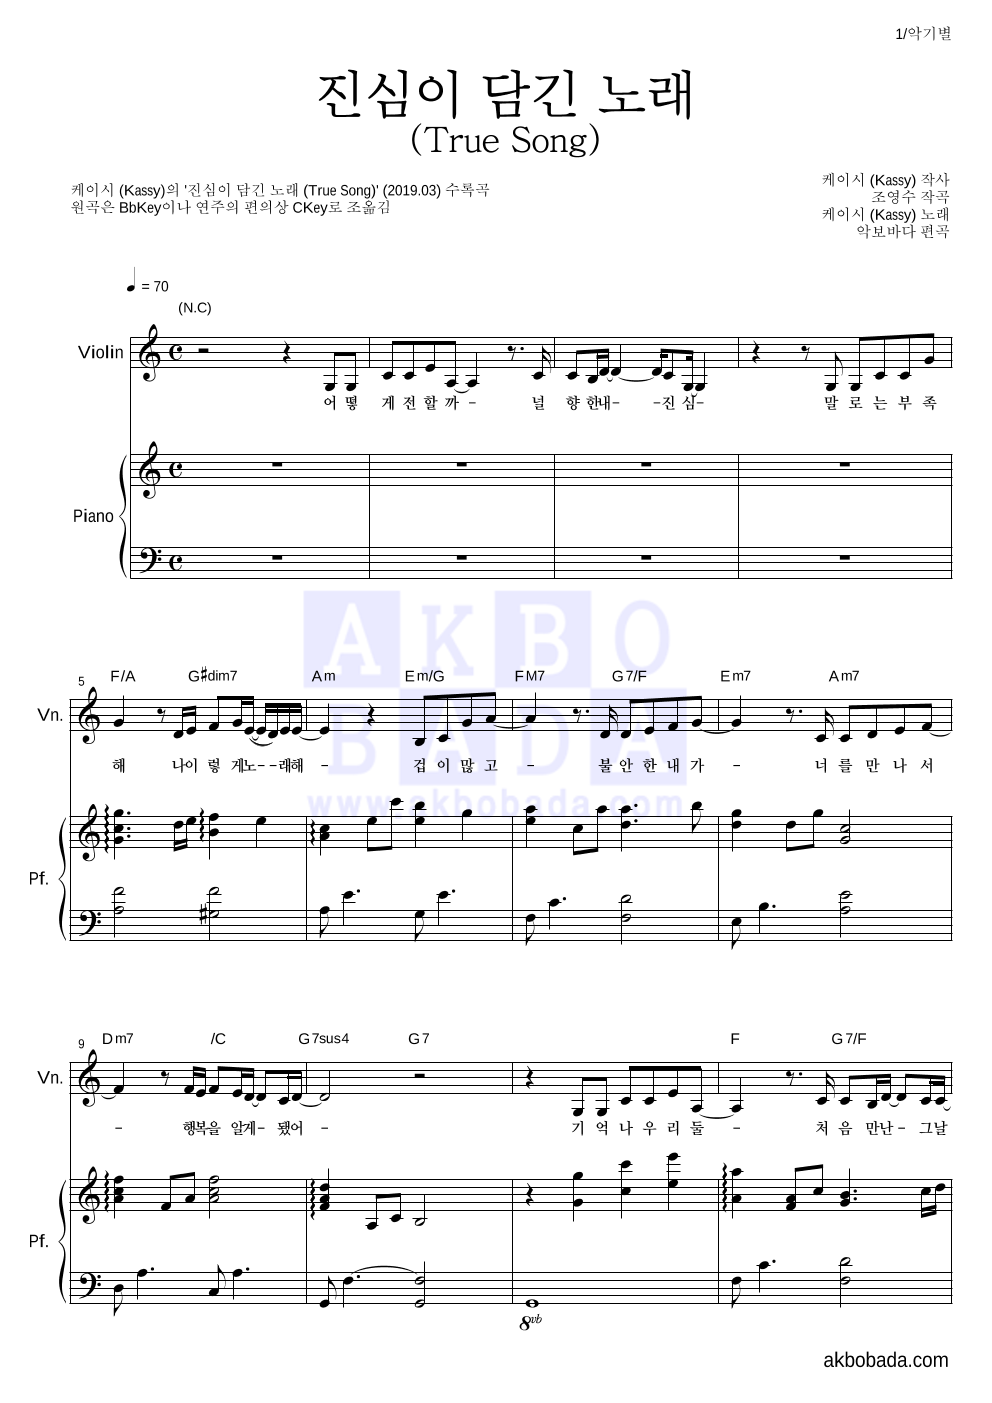 케이시 - 진심이 담긴 노래 (True Song) 바이올린&피아노 악보 